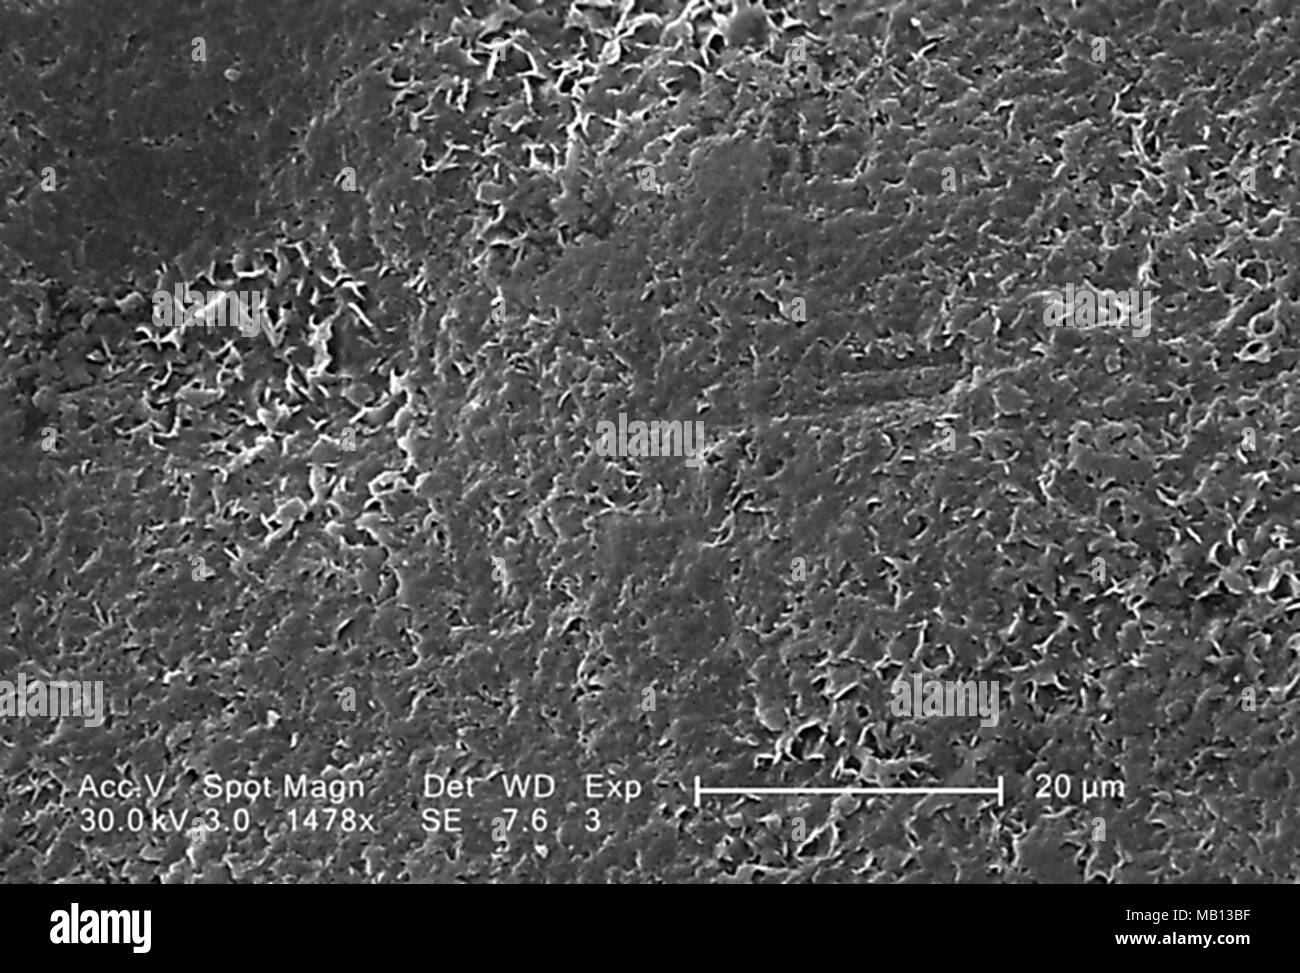 Superficie rugosa de un espécimen de la especie Vitis uva de mesa blanco reveló en el 2955x magnificada análisis microscópico de electrones (SEM) de imagen, 2005. Imagen cortesía de los Centros para el Control de Enfermedades (CDC). () Foto de stock